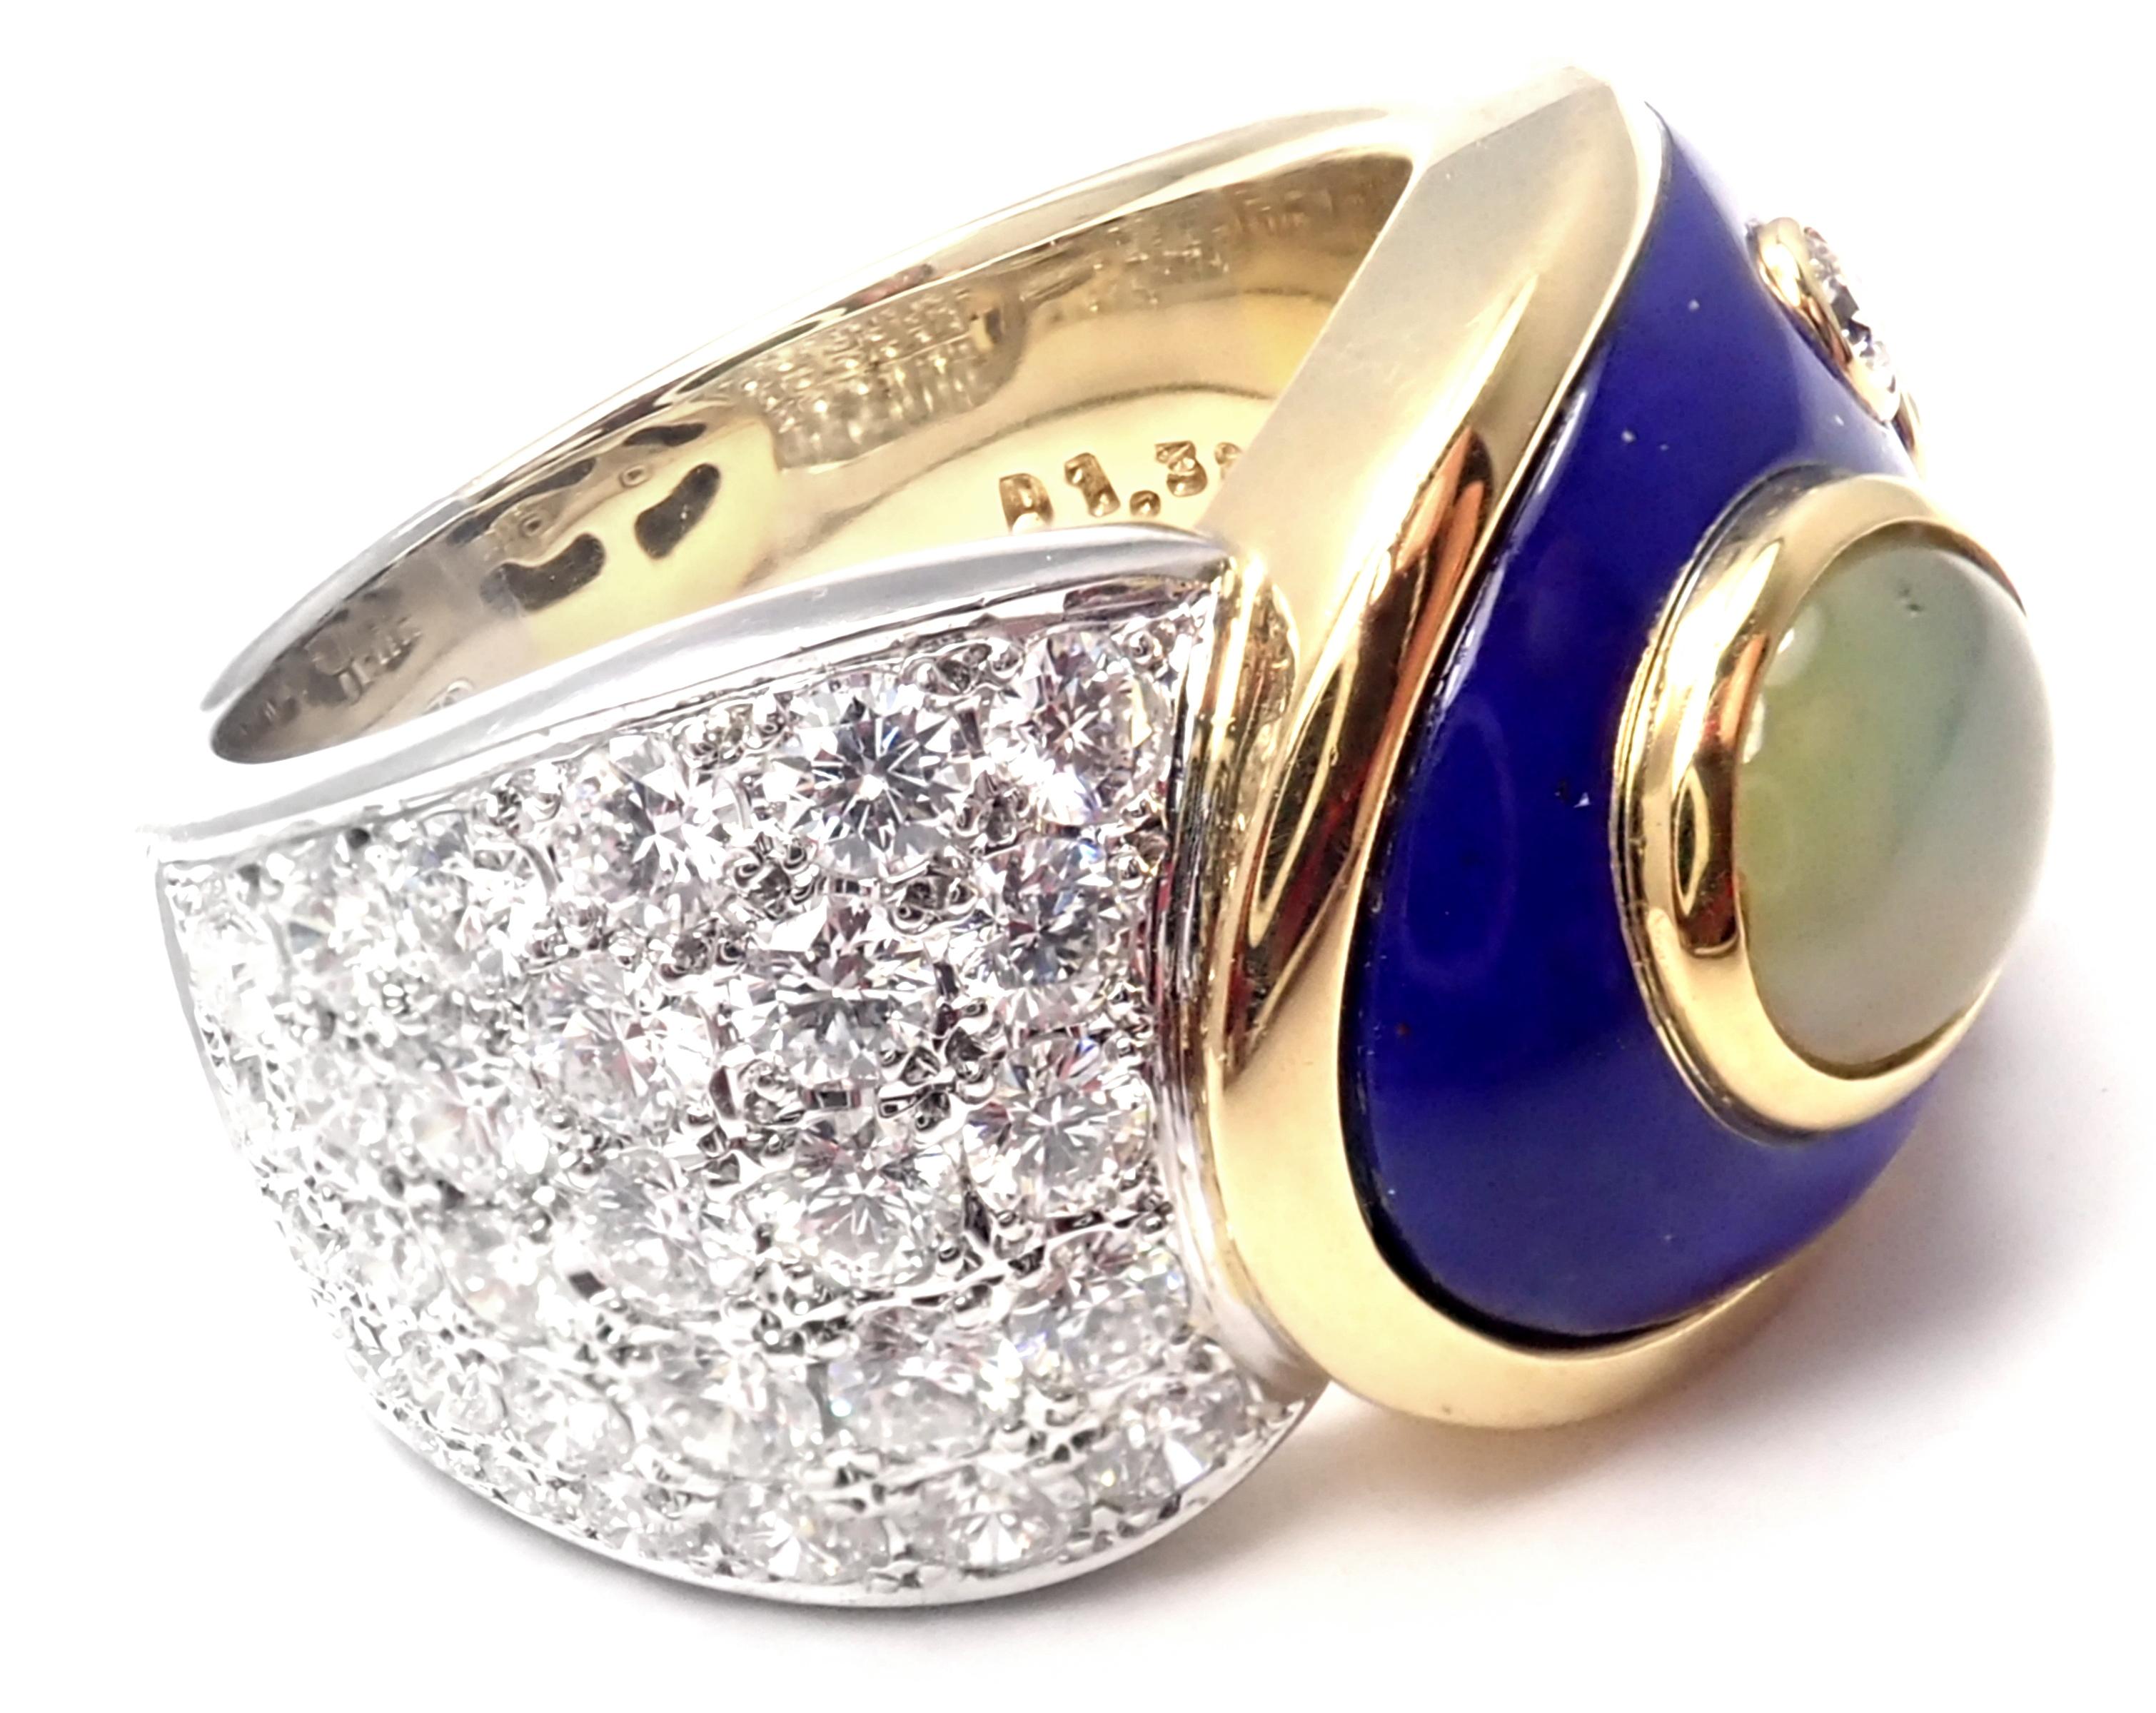 Platin und 18k Weißgold Diamant Cats Eye Blue Emaille Band Ring von Mikimoto. 
Mit Diamanten VS1 Klarheit, G Farbe Gesamtgewicht ca. .3.45ct
1 Katzenauge 7mm x 9mm
Einzelheiten: 
Ringgröße: 7
Gewicht: 23,4 Gramm
Breite: 15 mm
Gestempelte Punzen: